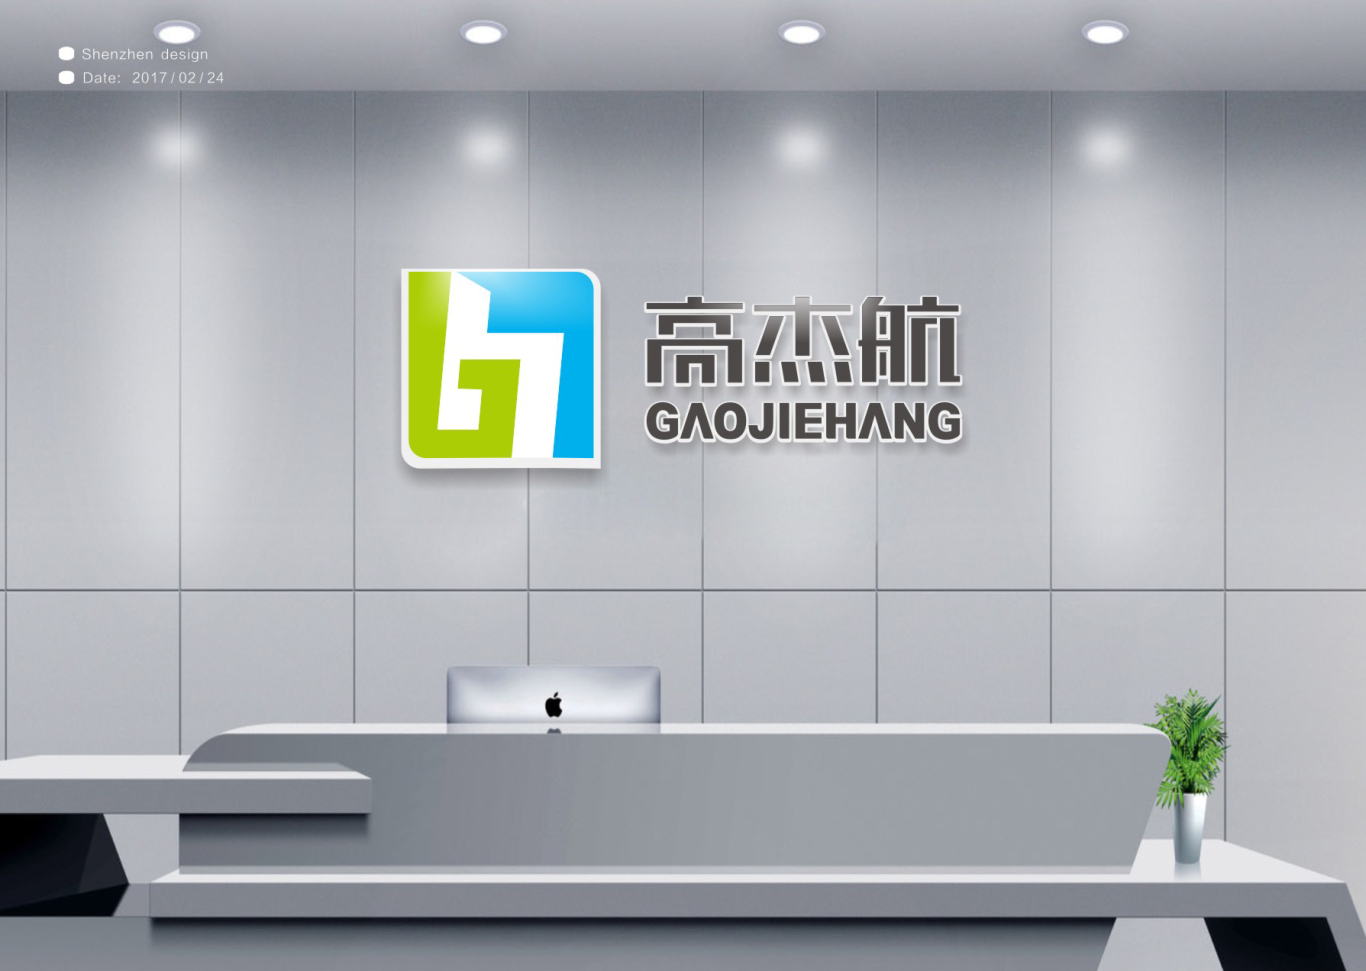 高杰航电子科技公司logo设计图4